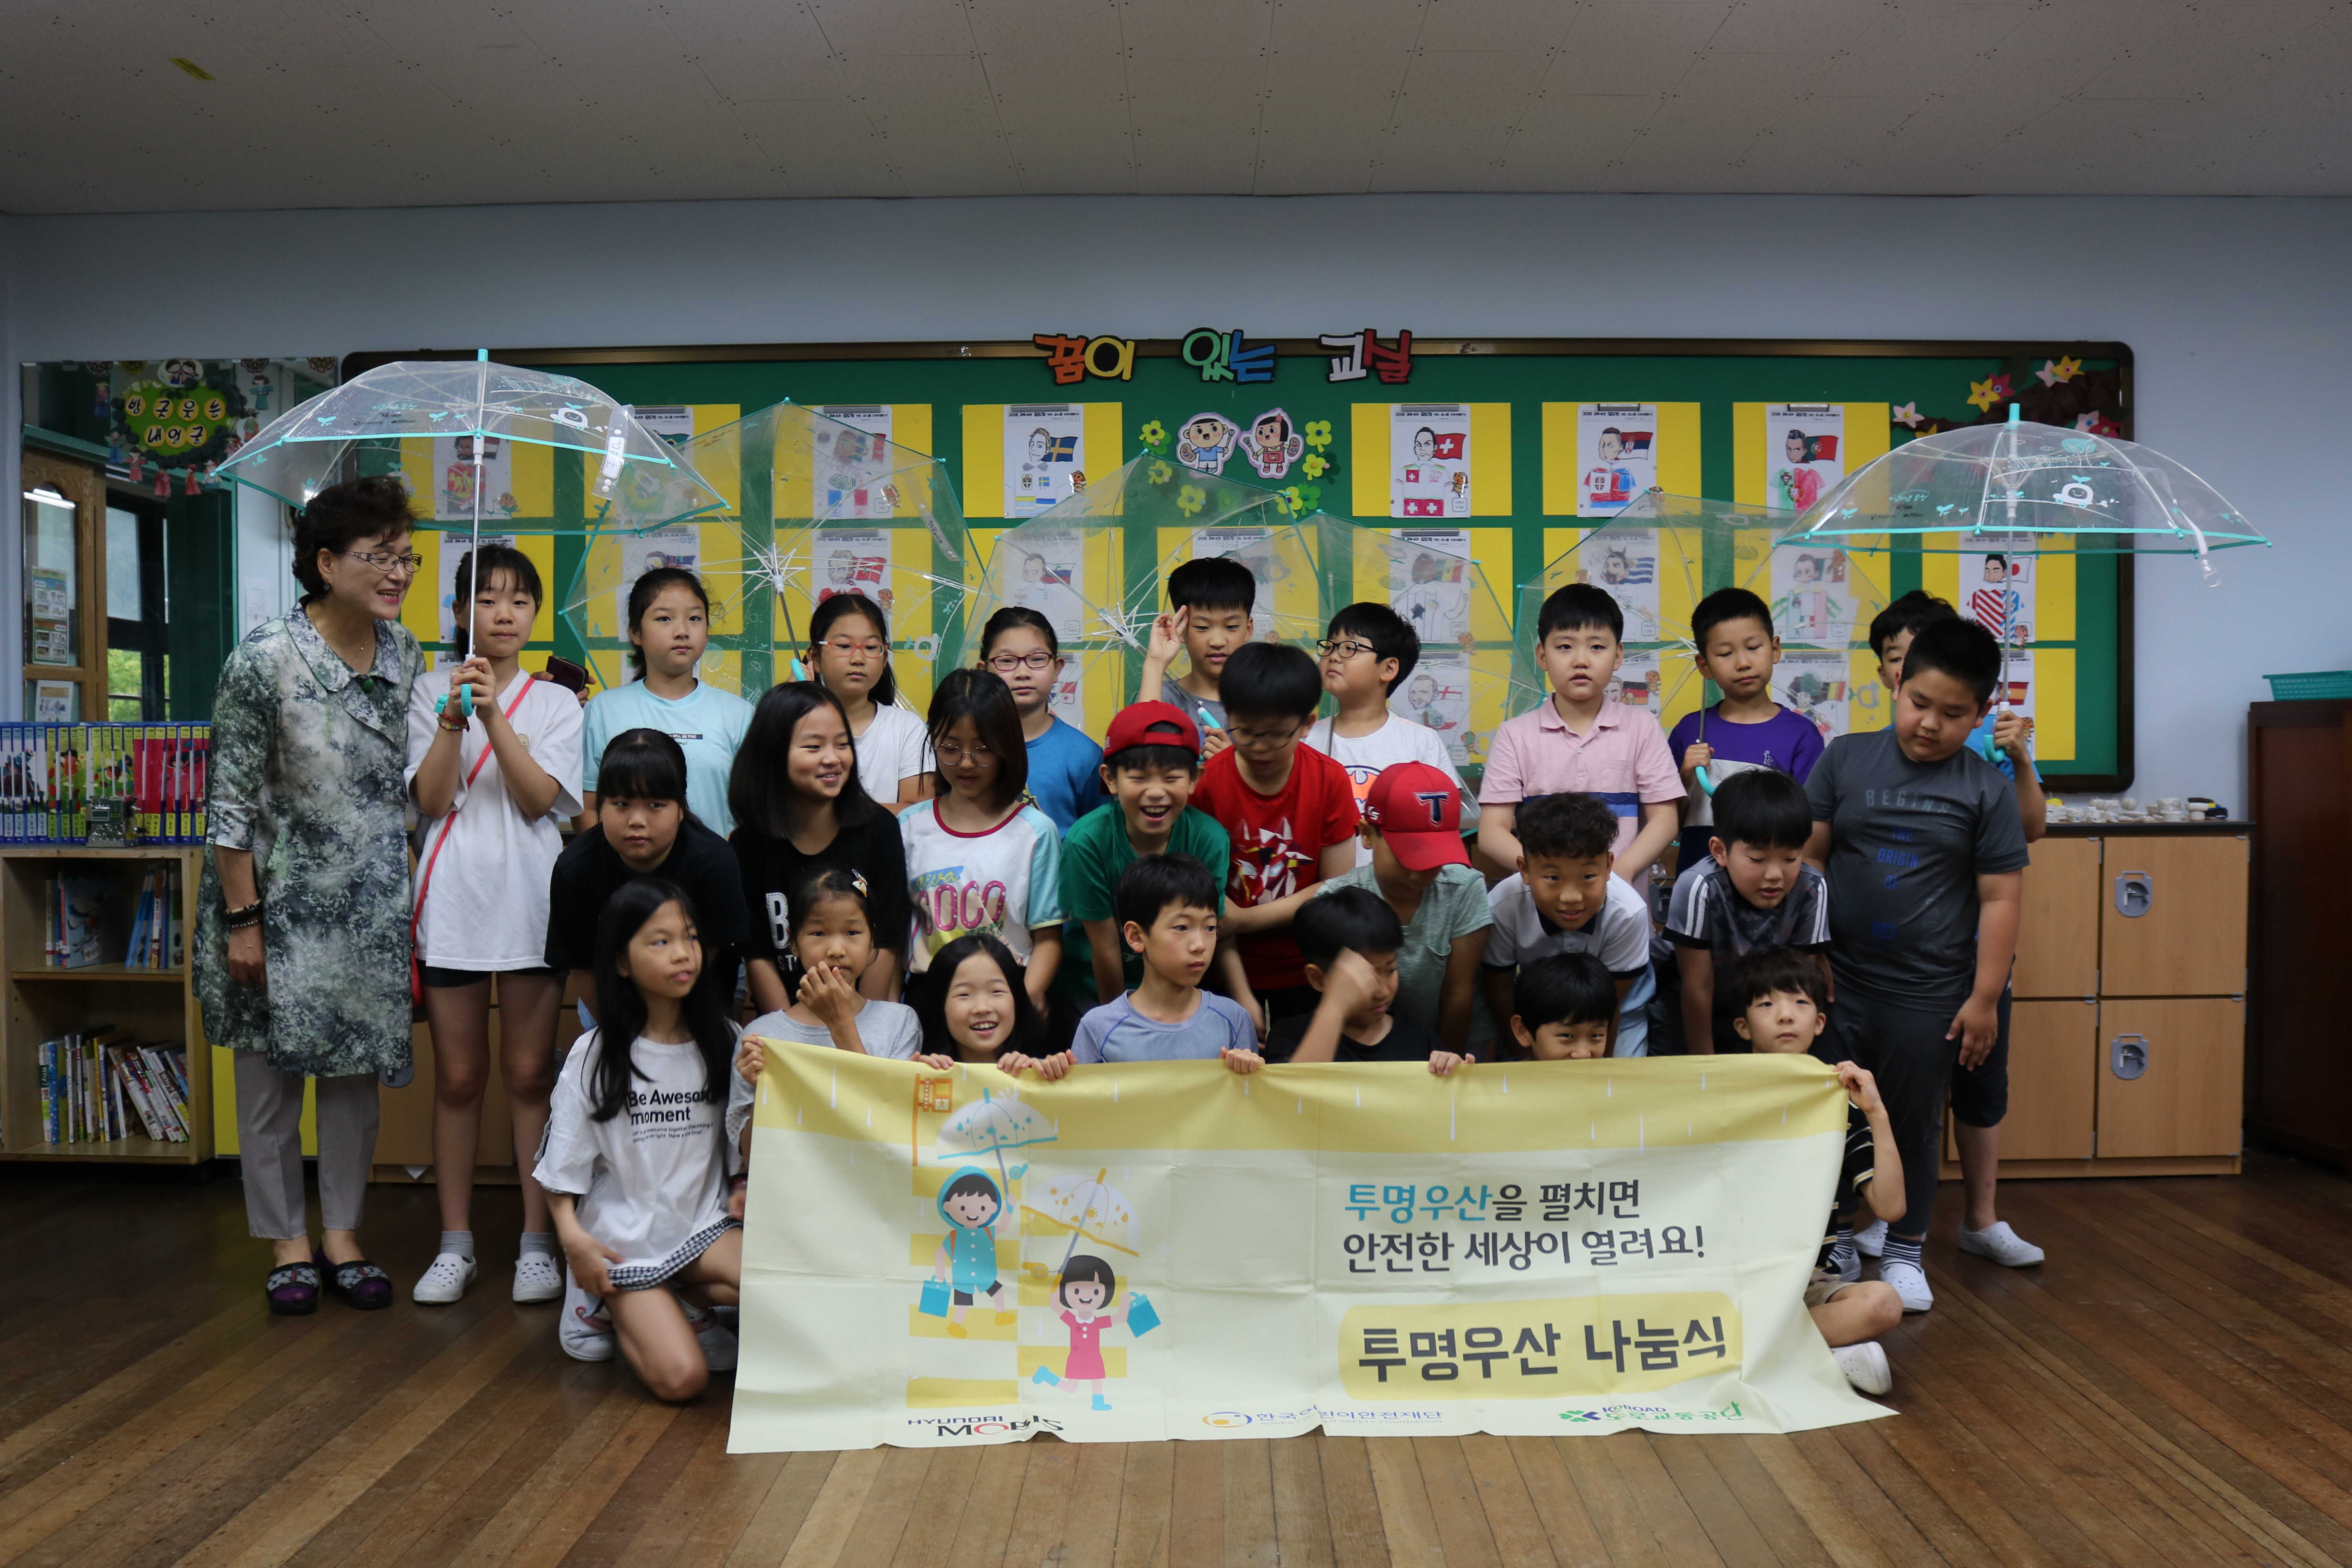 2018년 투명우산 나눔식 광주 '서일초등학교' 관련사진